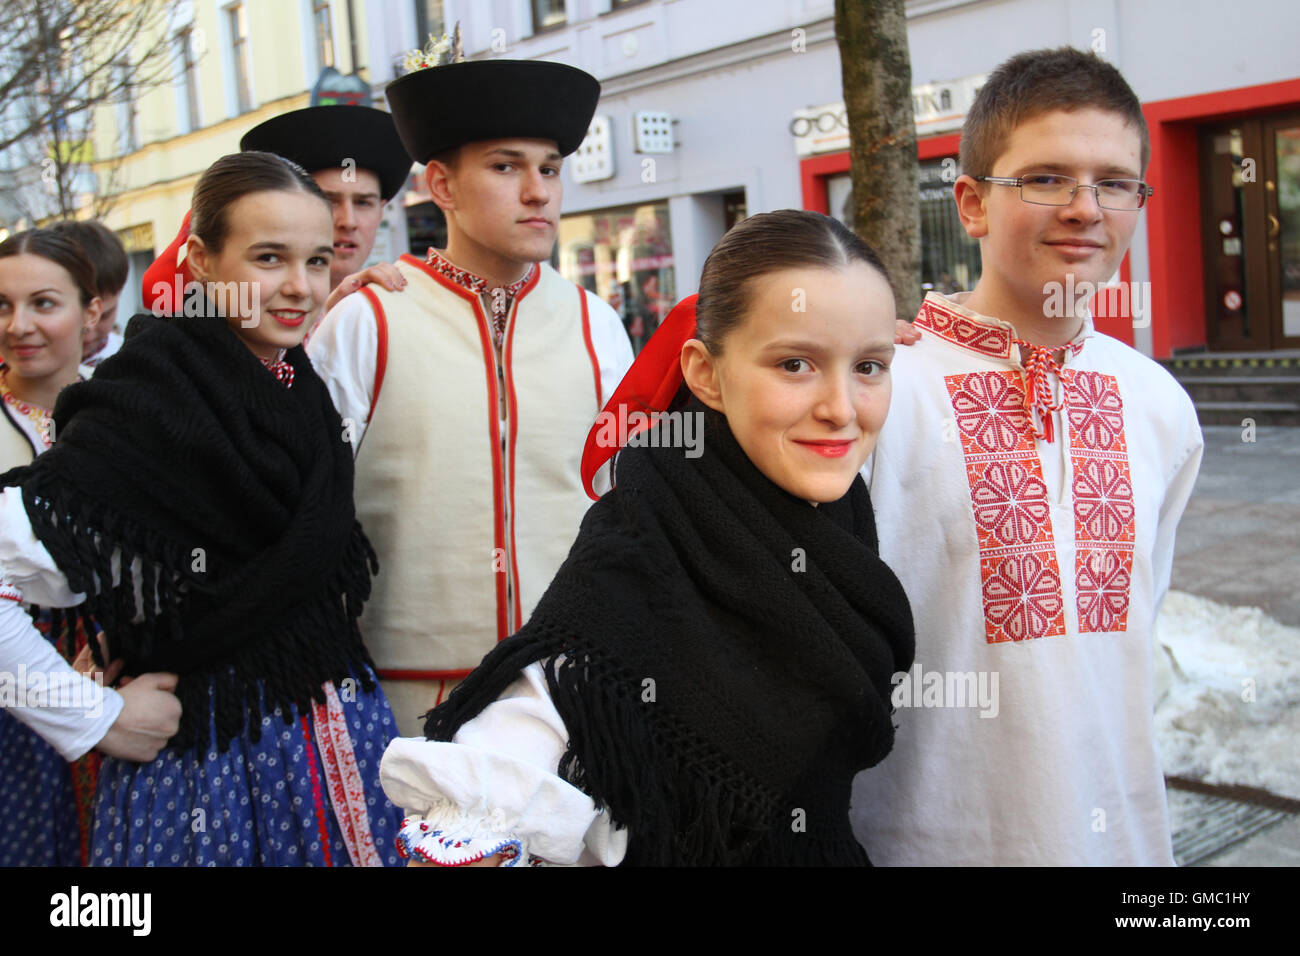 Les jeunes bénéficiant d'un festival de l'absolution (Mardi Gras) qui marque le début de 40 jours de jeûne (Mercredi des Cendres) en Slovaquie. Banque D'Images